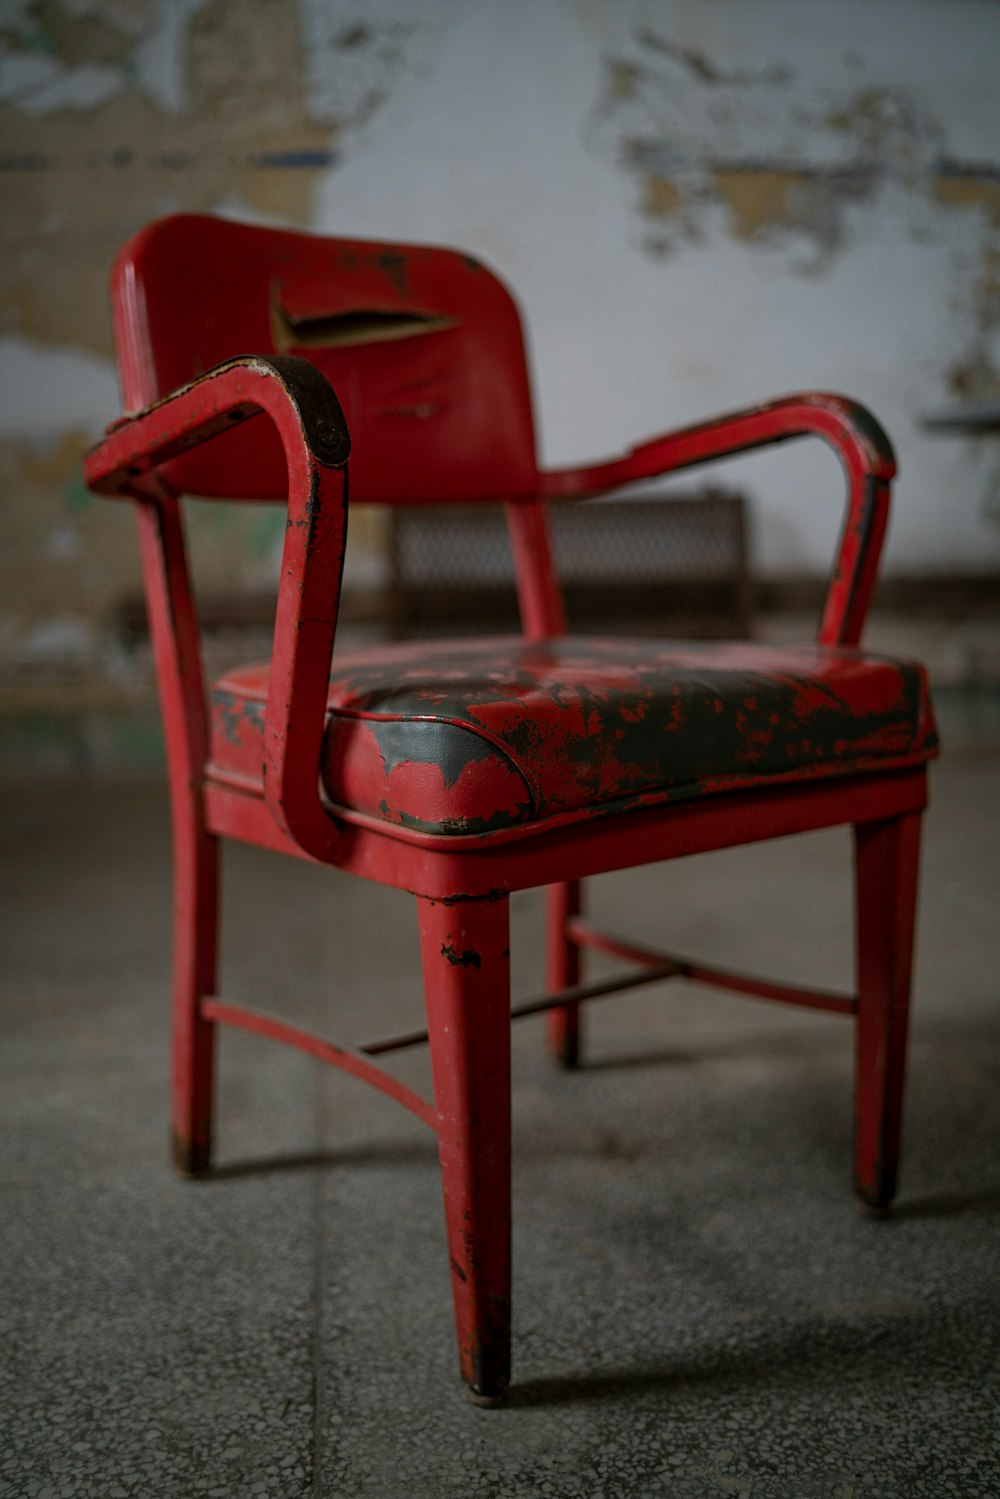 fauteuil en plastique rouge sur sol en béton gris